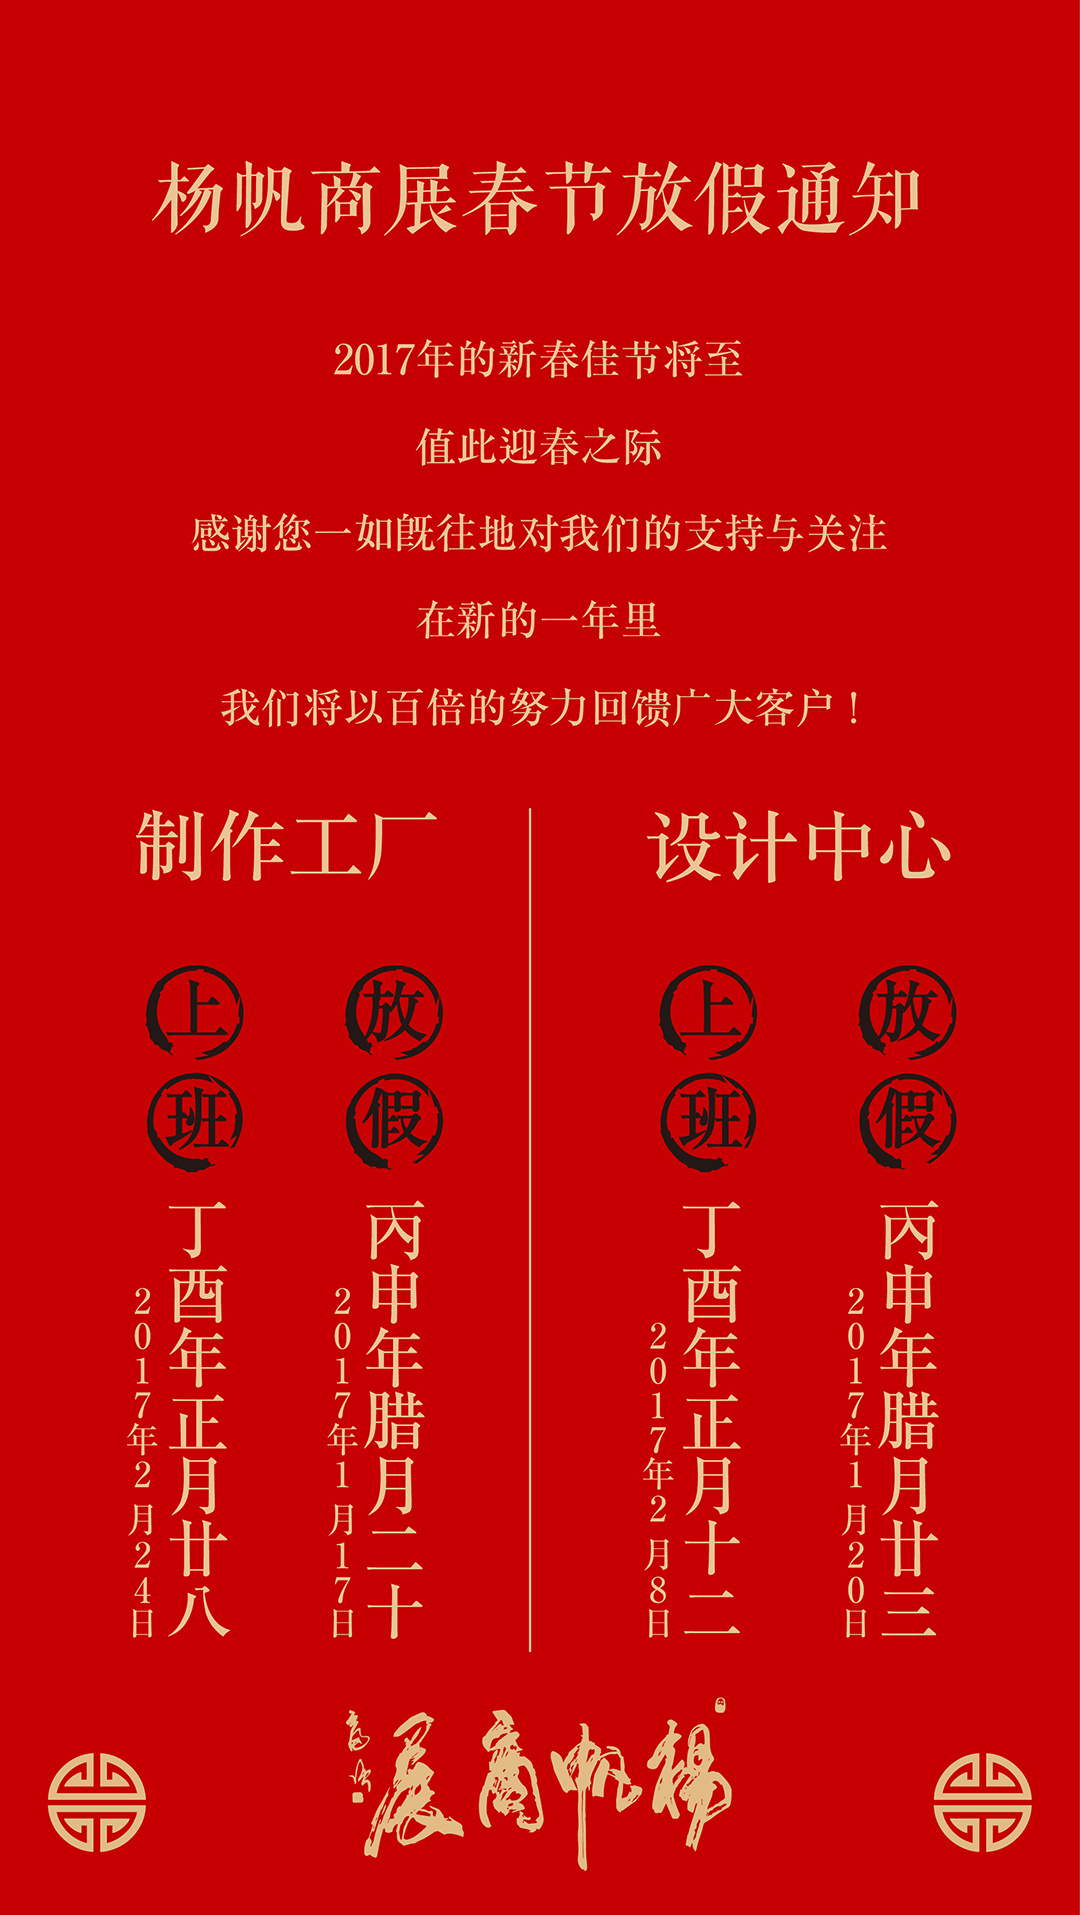 深圳木可设计原创:新年贺卡、放假通知海报设